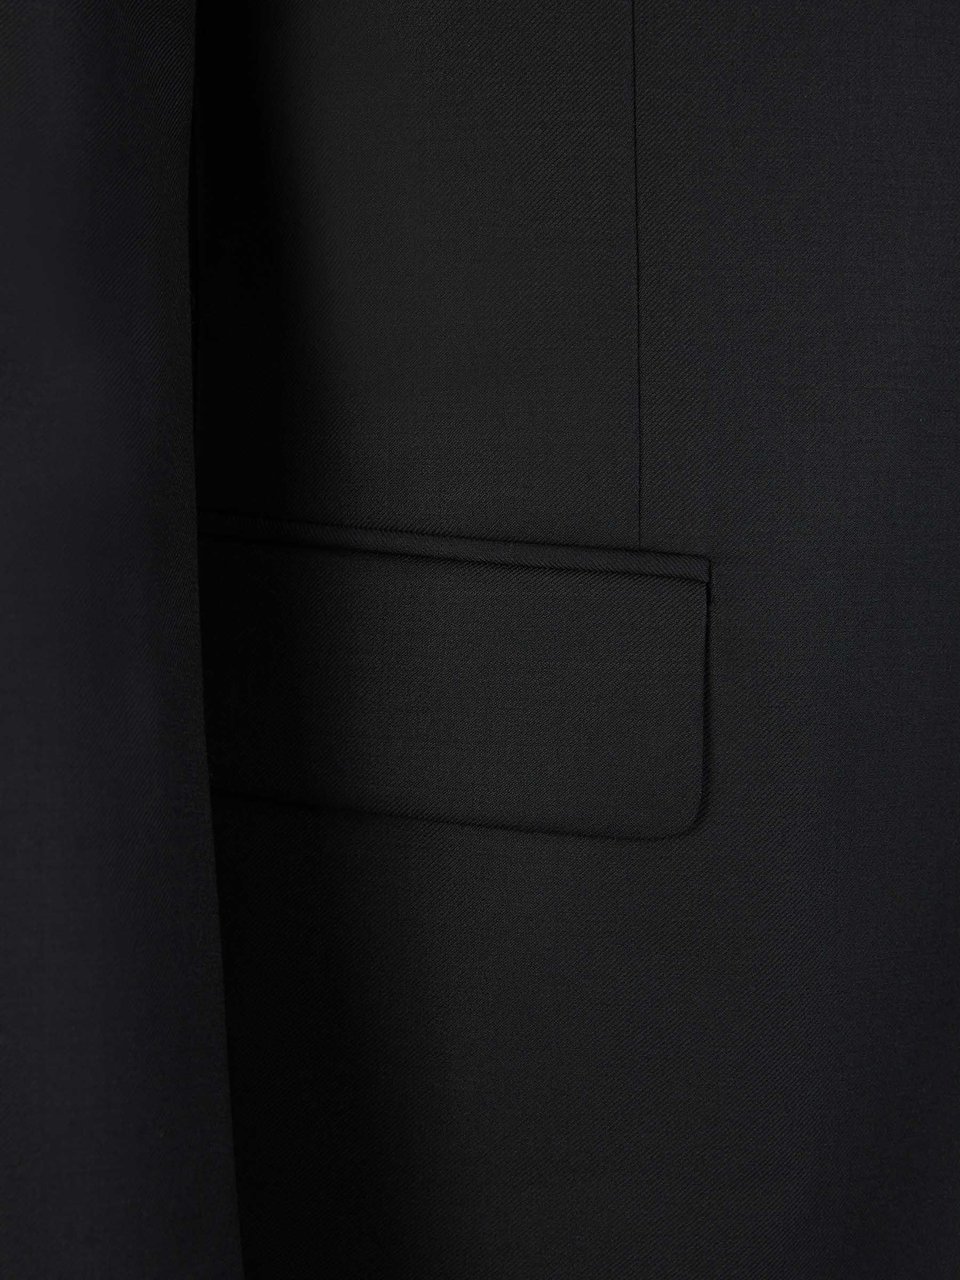 Valentino Plain Wool Tuxedo Zwart